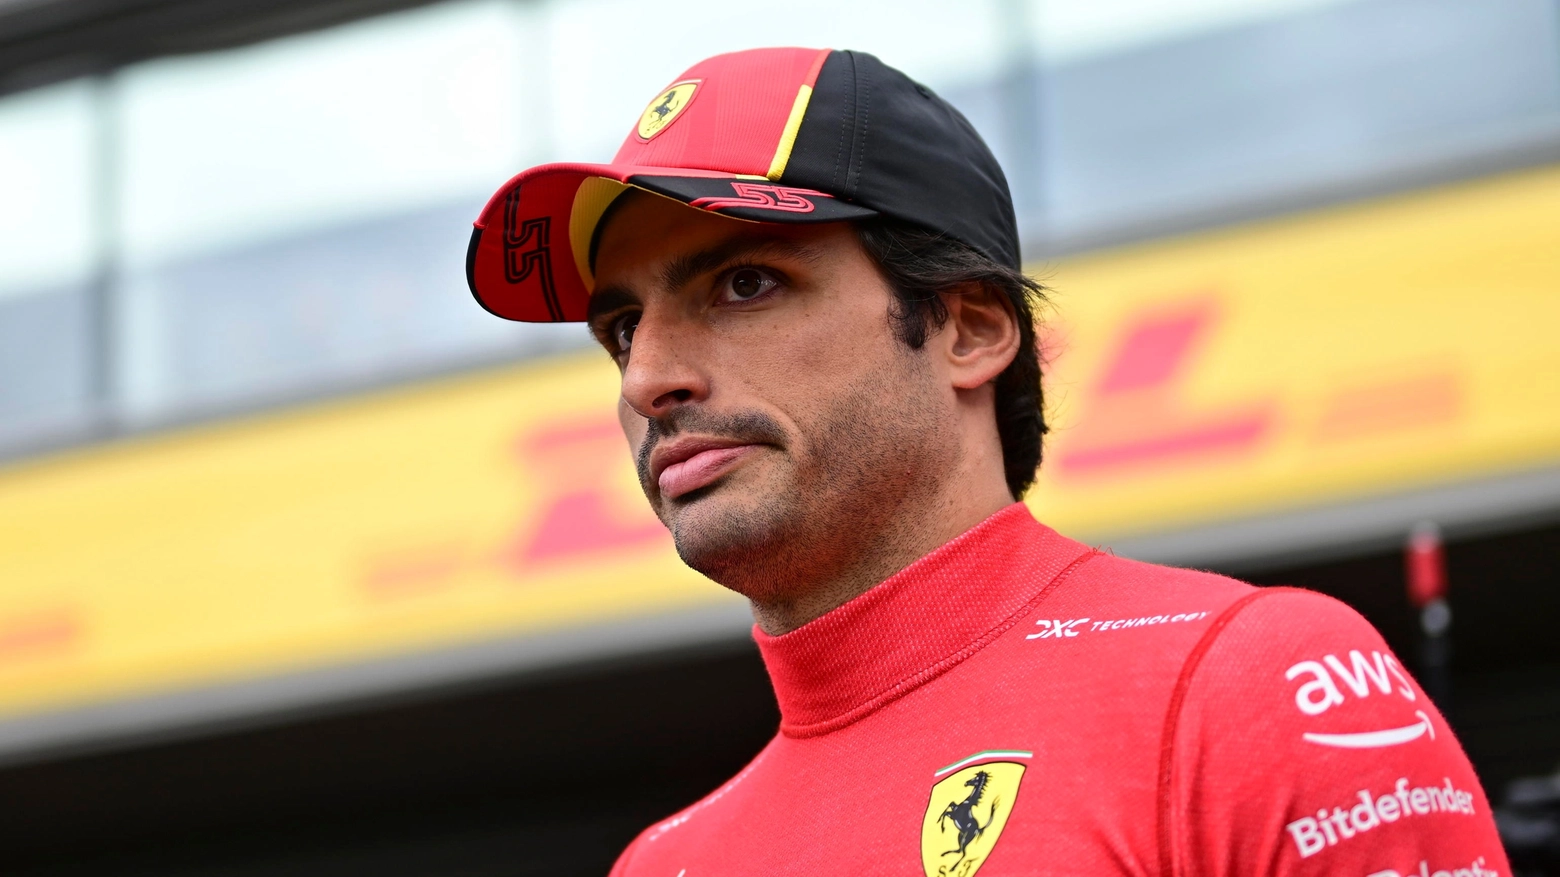 Il pilota spagnolo della Ferrari sente di essere in ottima forma, alla vigilia del Gran Premio di Zandvoort: “Ho molta esperienza e mi sento al top della forma”